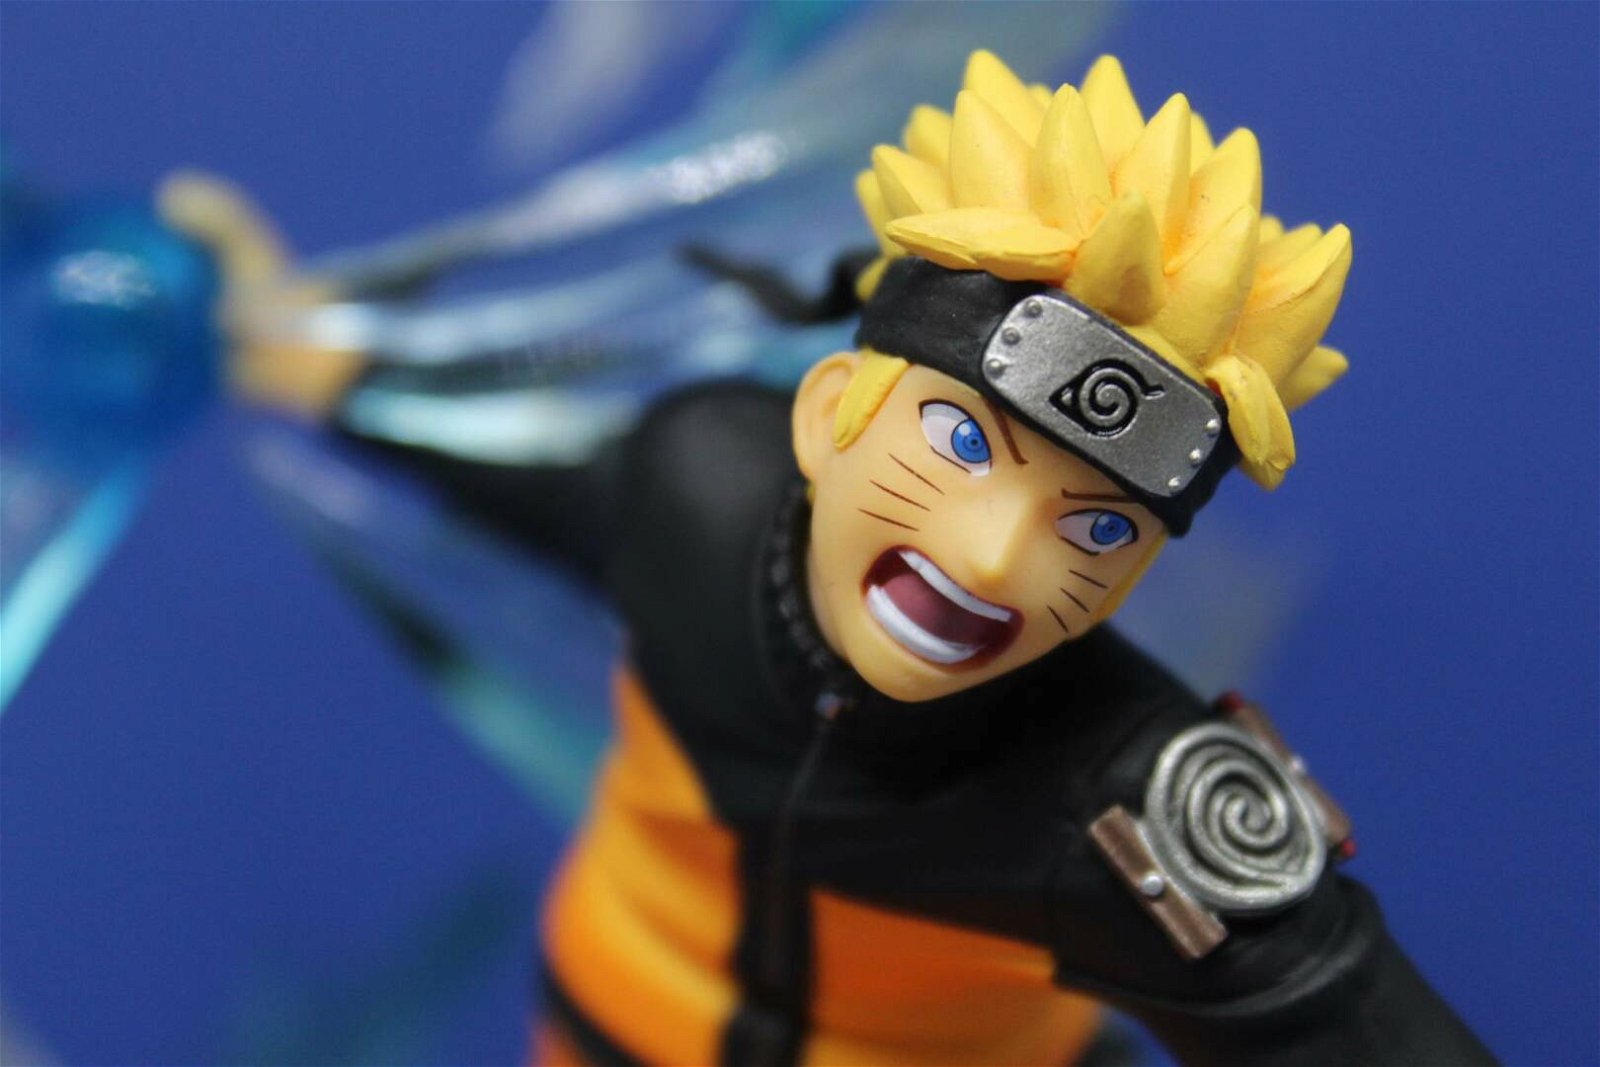 Immagine di Naruto Shippuden, Naruto Uzumaki - Figuarts Zero: Recensione